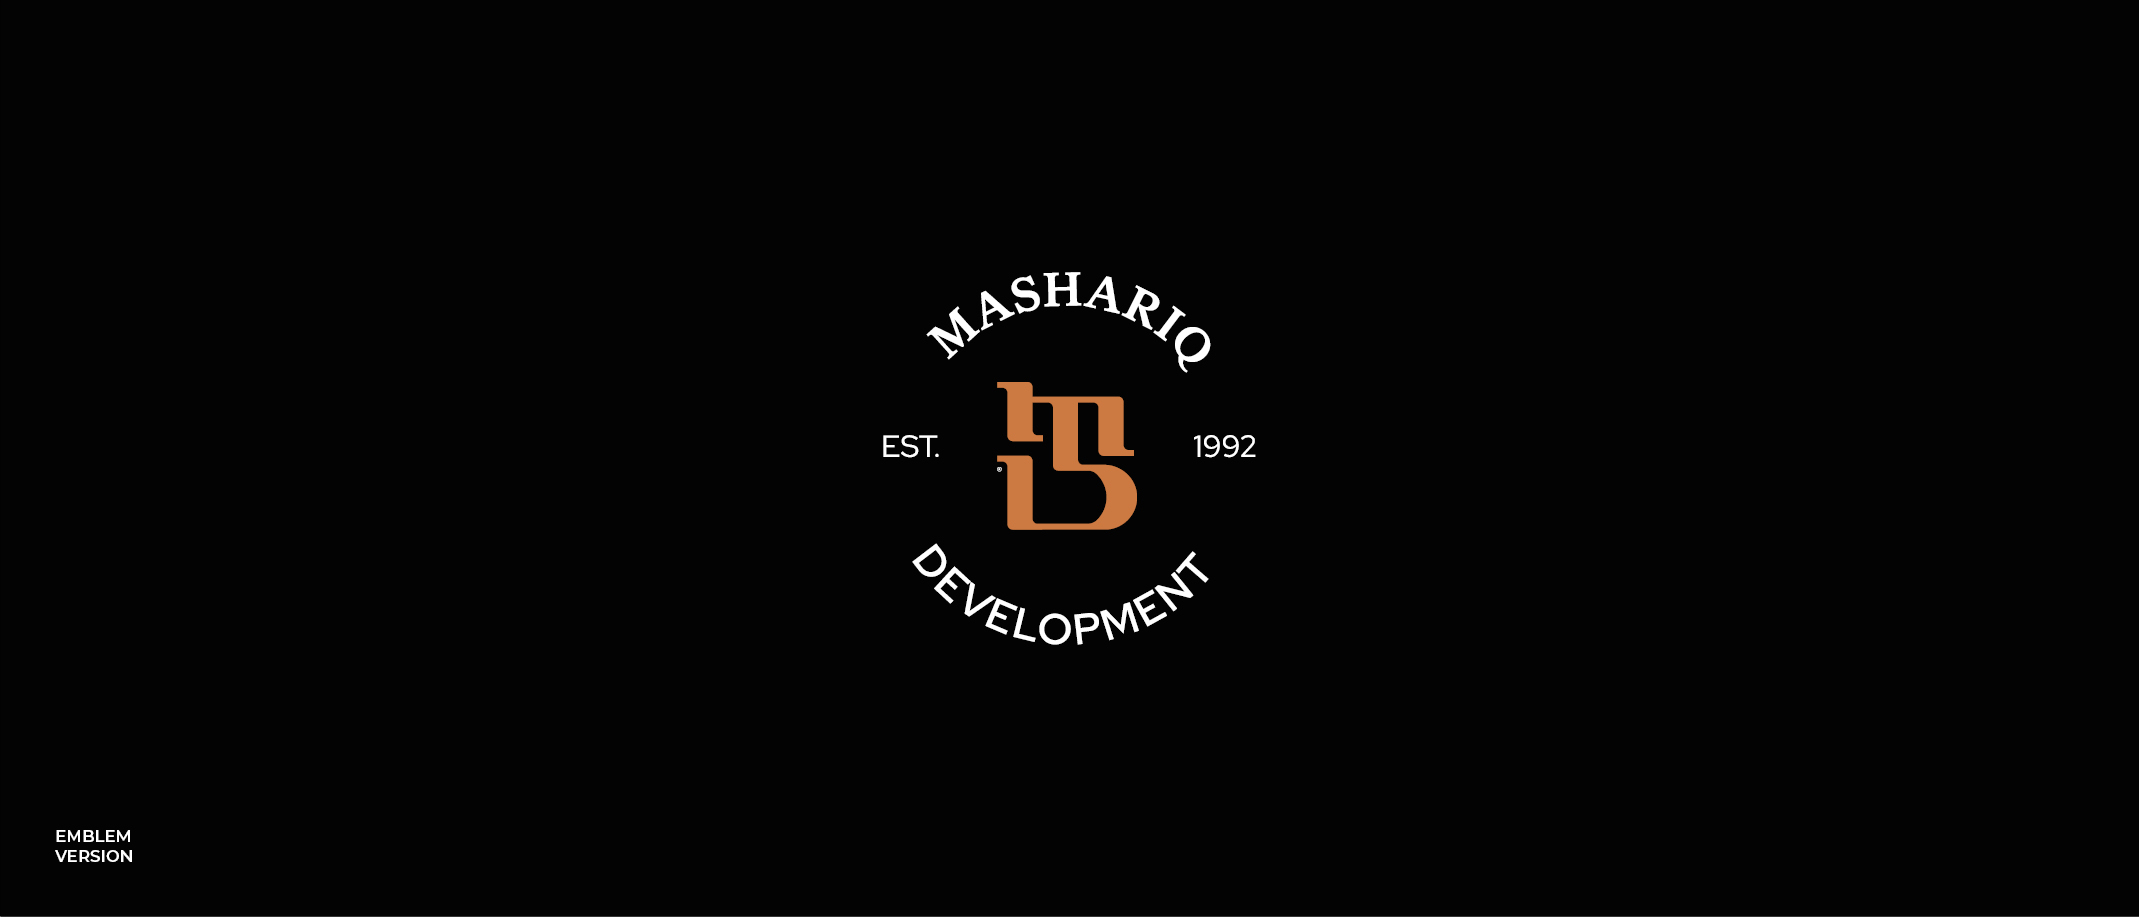 Mashariq Real Estate Brand Identity